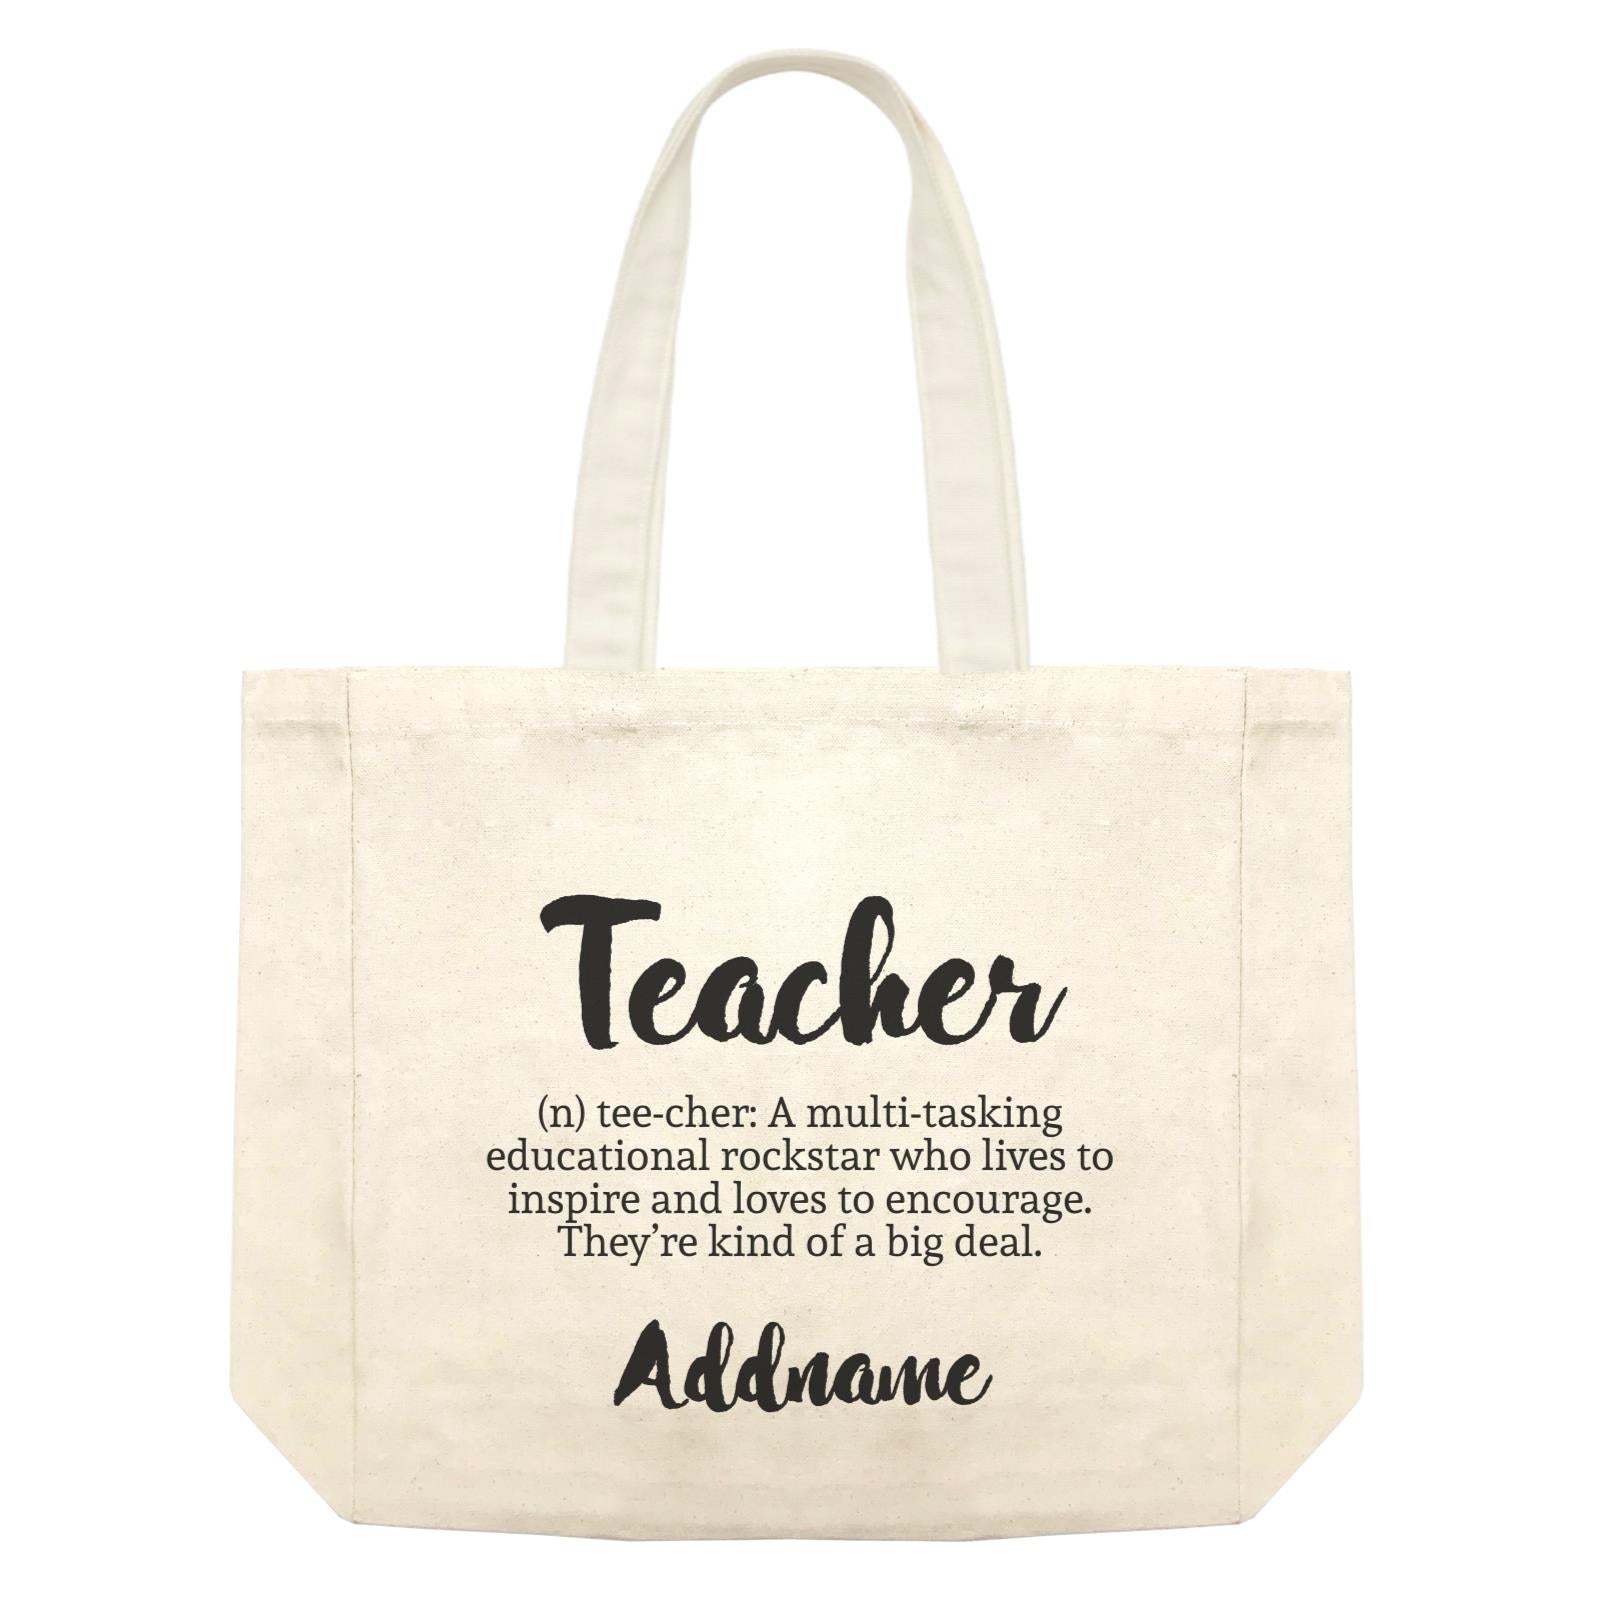 Teacher Quotes 2 Teacher Noun Addname Shopping Bag